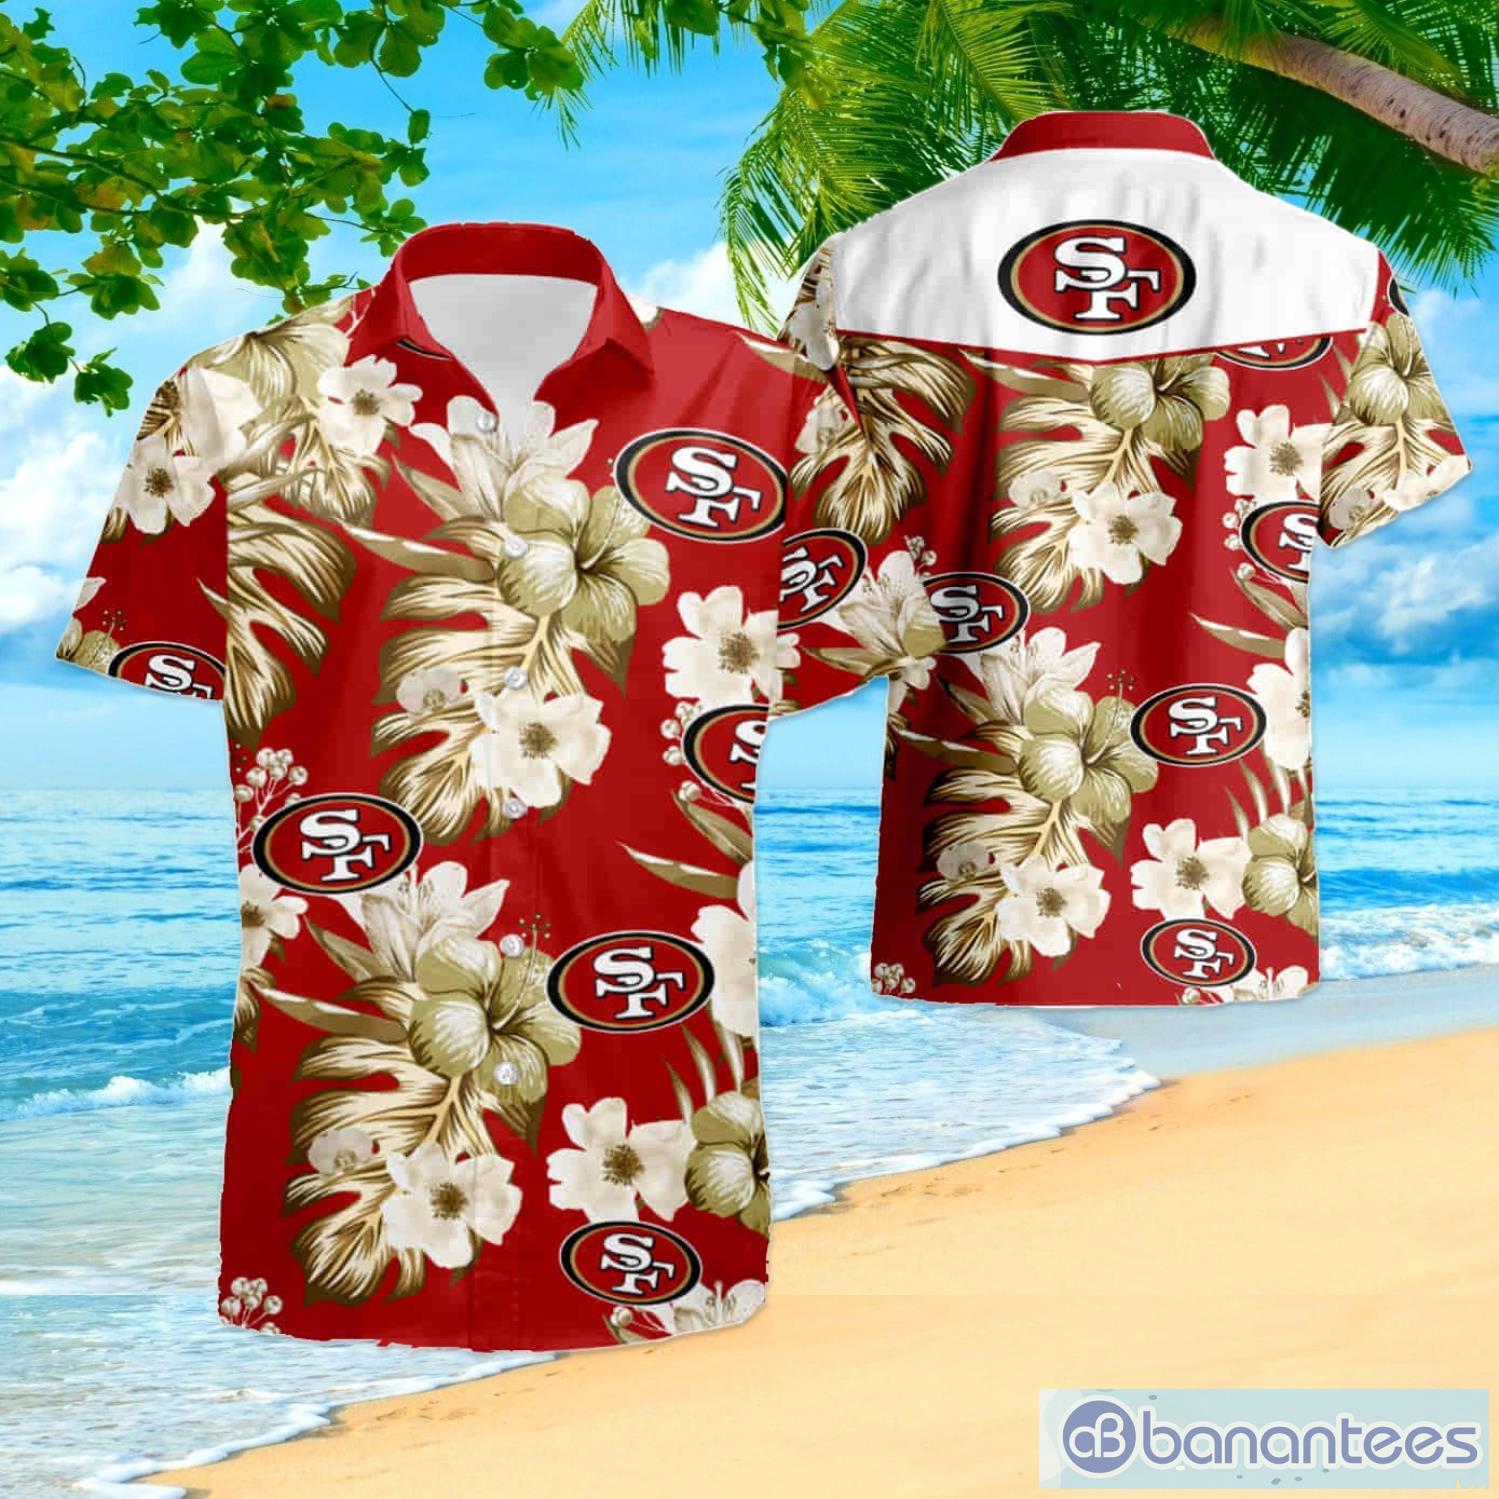 San Francisco 49ers San Francisco Floral Football Hawaiian Shirt And Shorts Summer Gift For Fans Product Photo 1